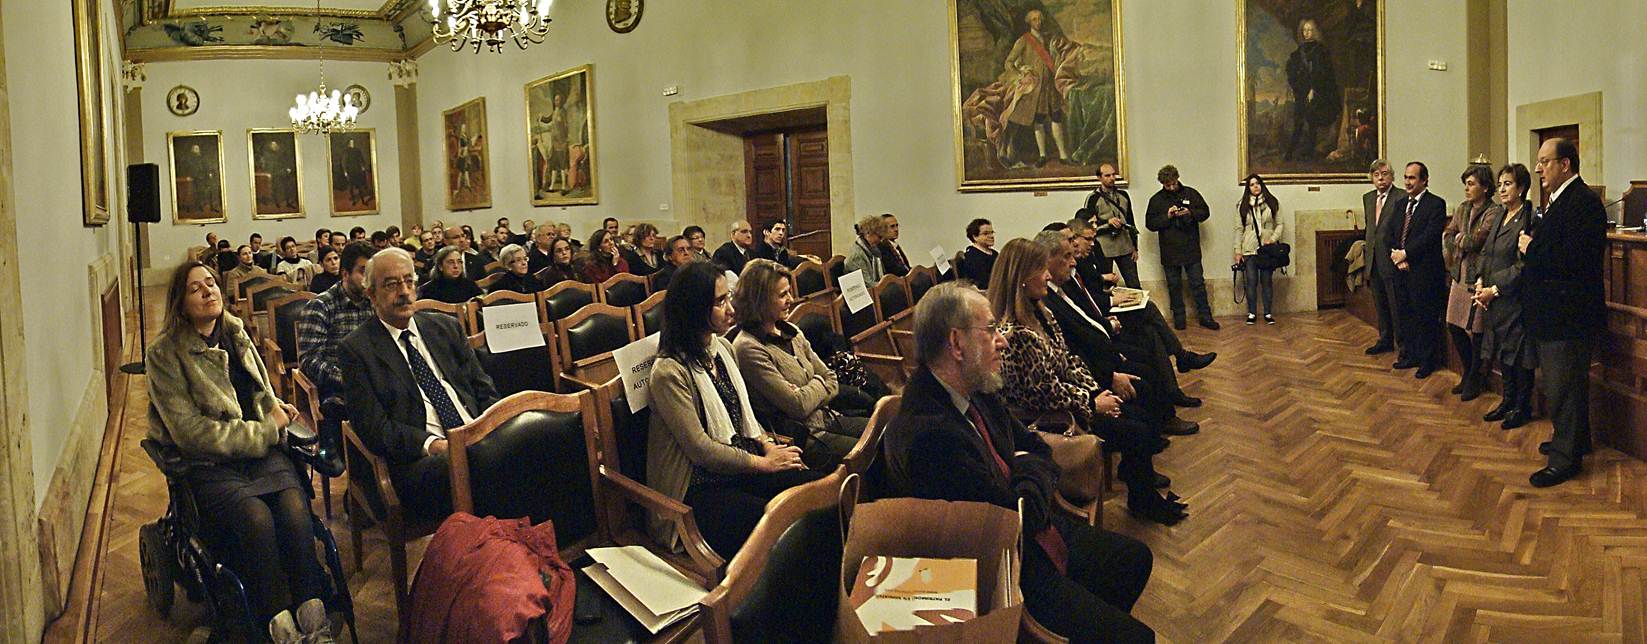 RNE, Televisión Castilla y León de Salamanca, la Filmoteca, la Denominación de Origen de Guijuelo e Isabel Jaschek reciben los Premios ASUS 2012